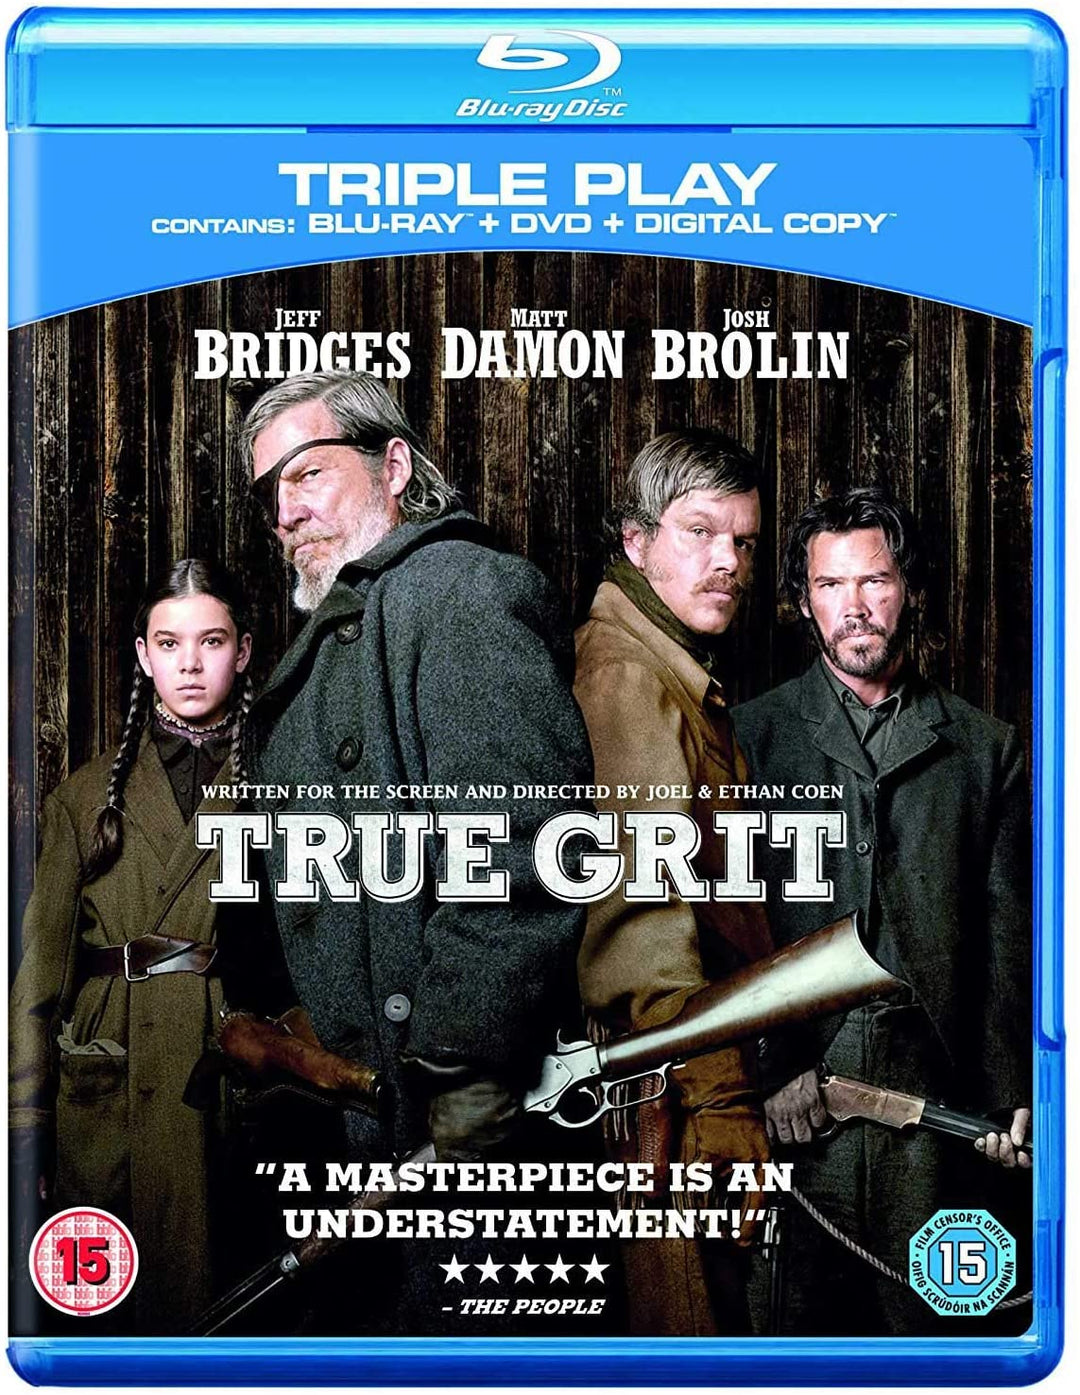 True Grit – Western (Blu-ray + DVD) [2011] [Region Free] [Blu-ray]